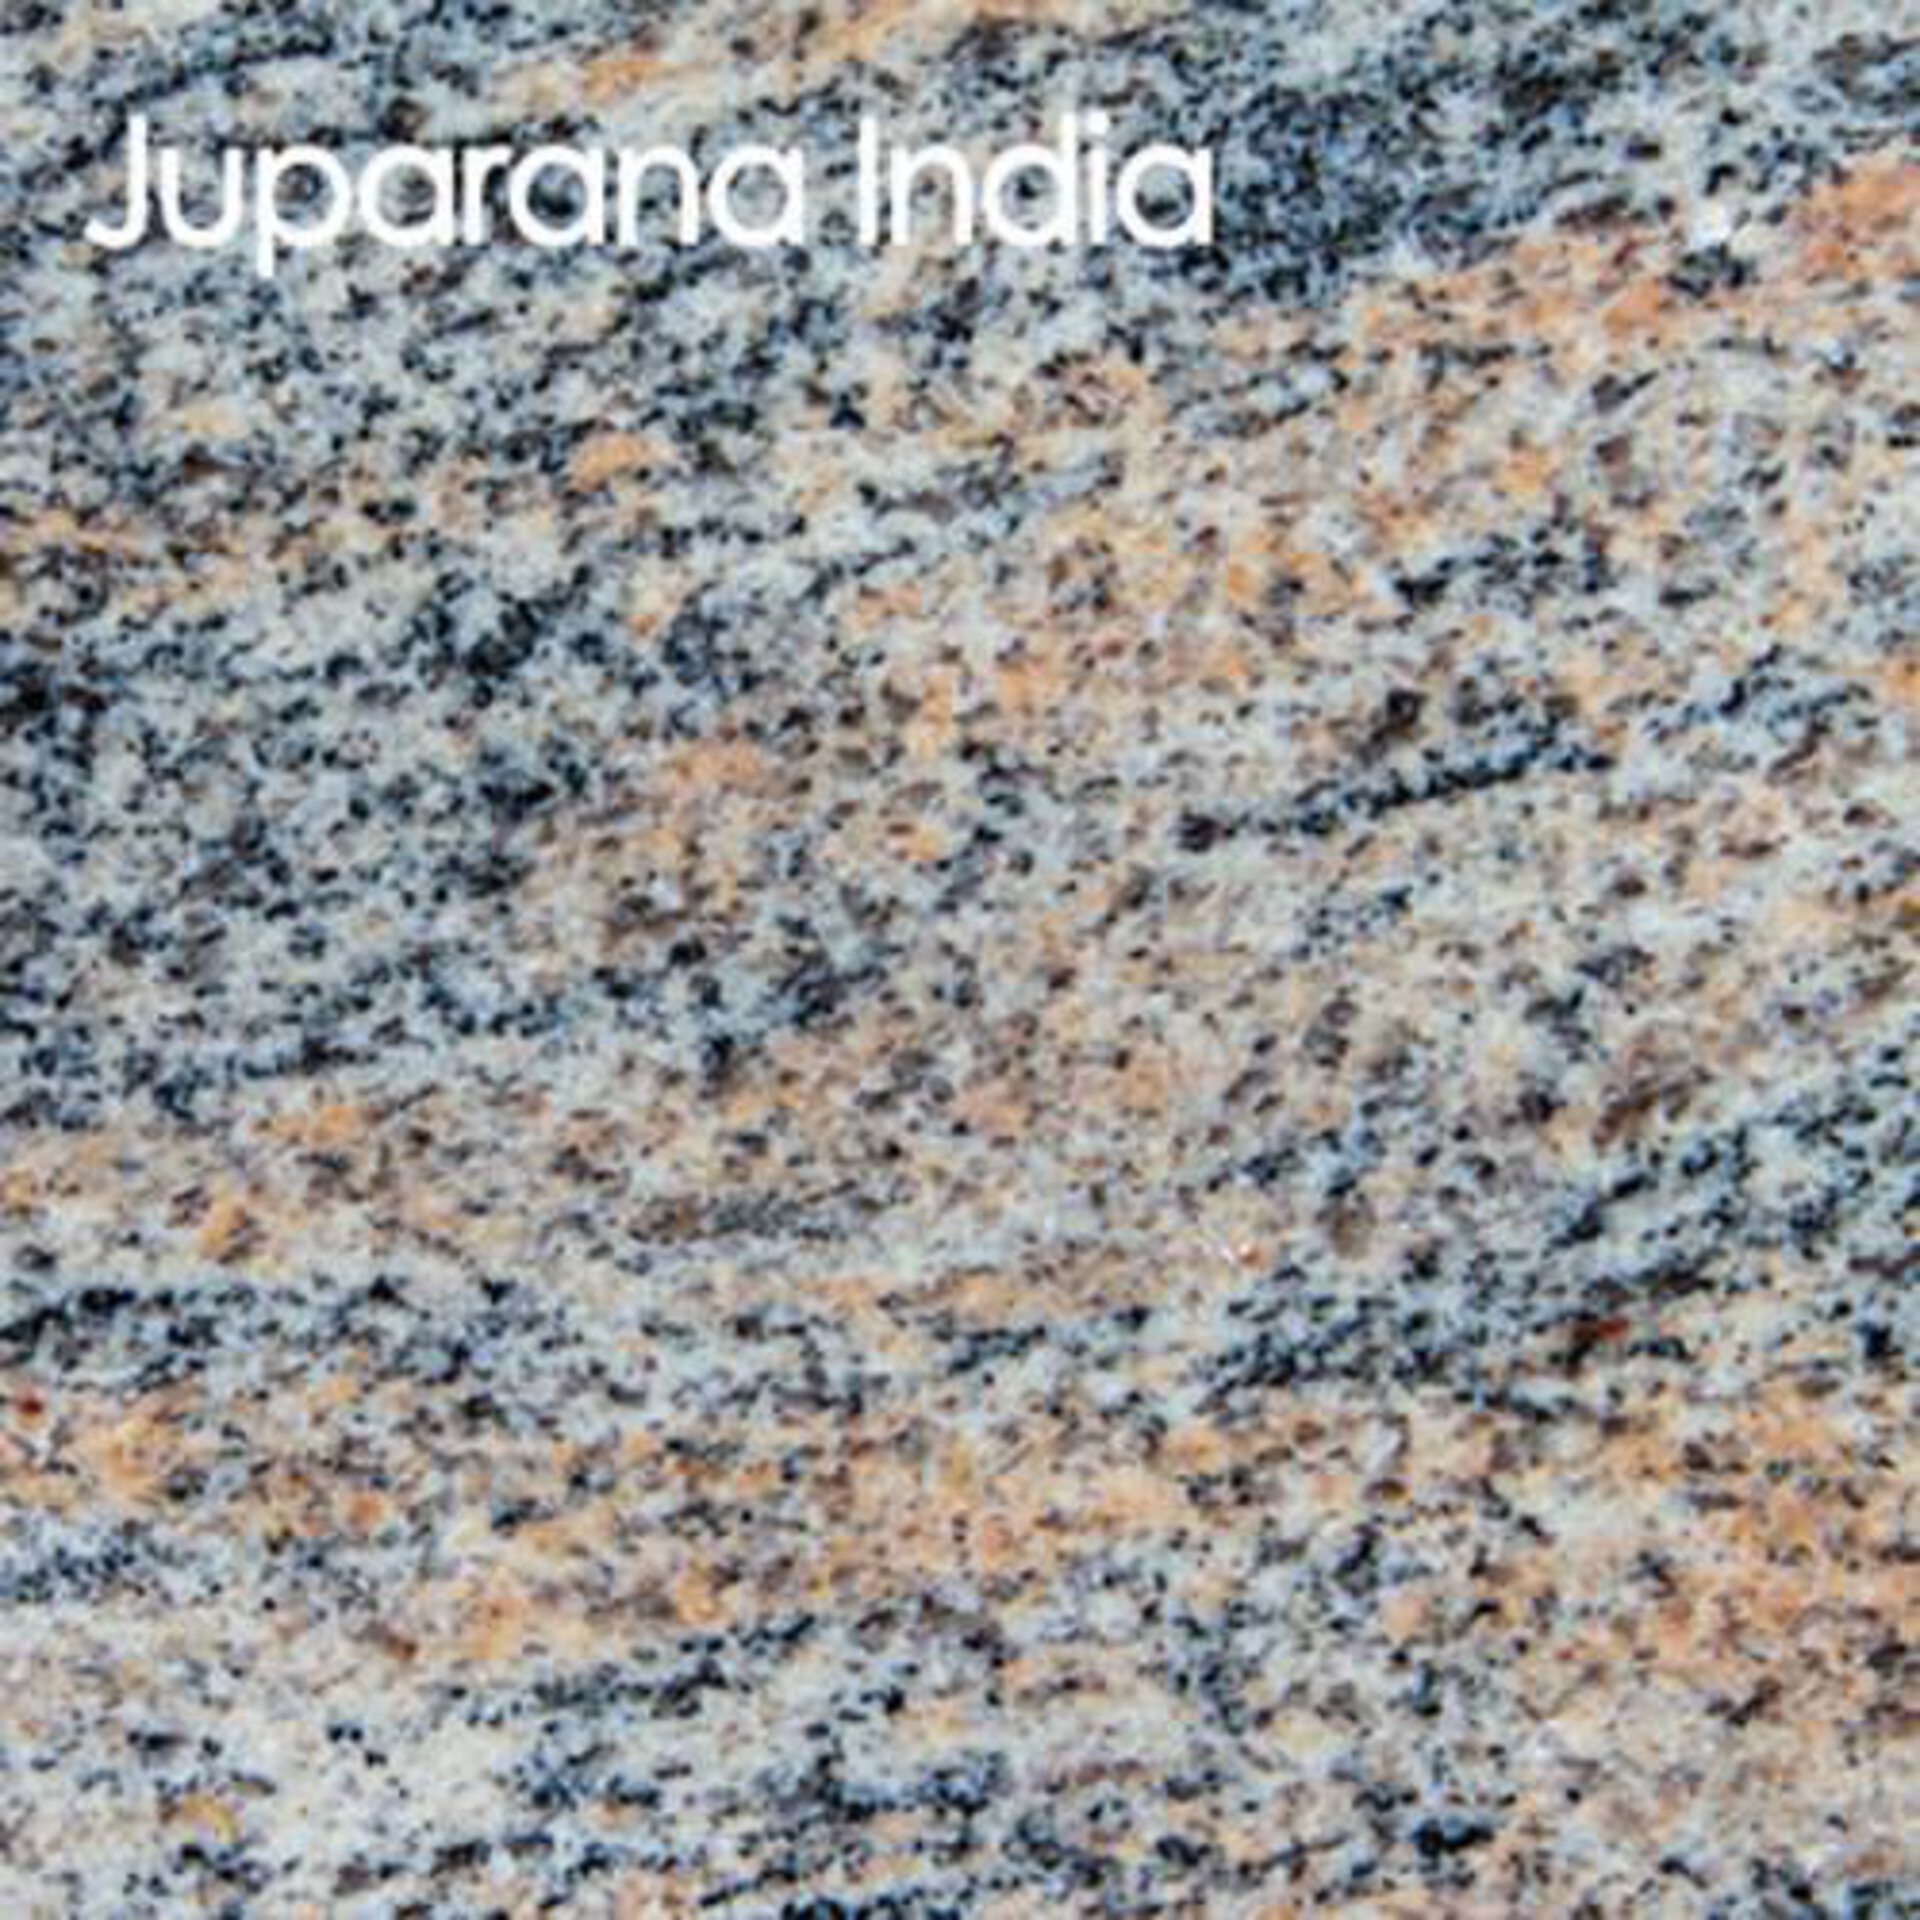 Arbeitsplatte aus Naturstein in der Ausführung Juparano India.